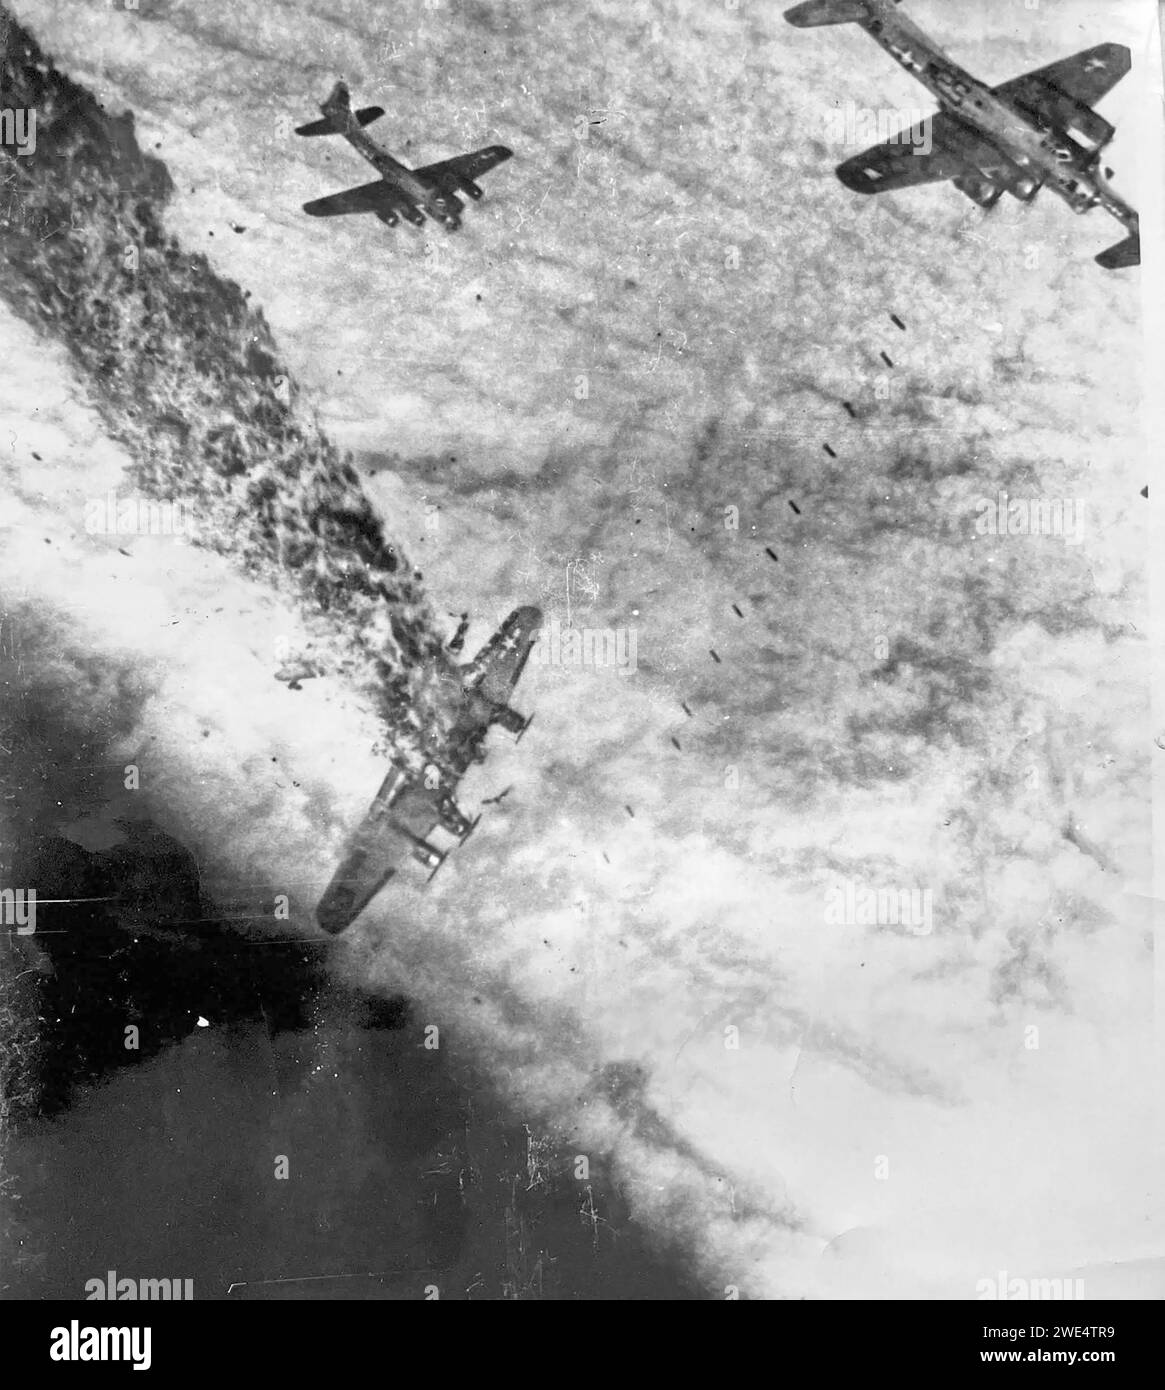 LE BOEING B-17G du 834e Escadron de bombardement de l'USAAF, volant de la RAF Sudbury, en Angleterre, subit un coup direct de Flak lors d'une mission au-dessus de l'Allemagne le 2 novembre 1944. Les autres avions larguent des bombes à travers les nuages après que la cible a été conformée par le bombardier maître. Photo prise par le S/Sgt Bill Stewart depuis sa fenêtre de taille. Banque D'Images